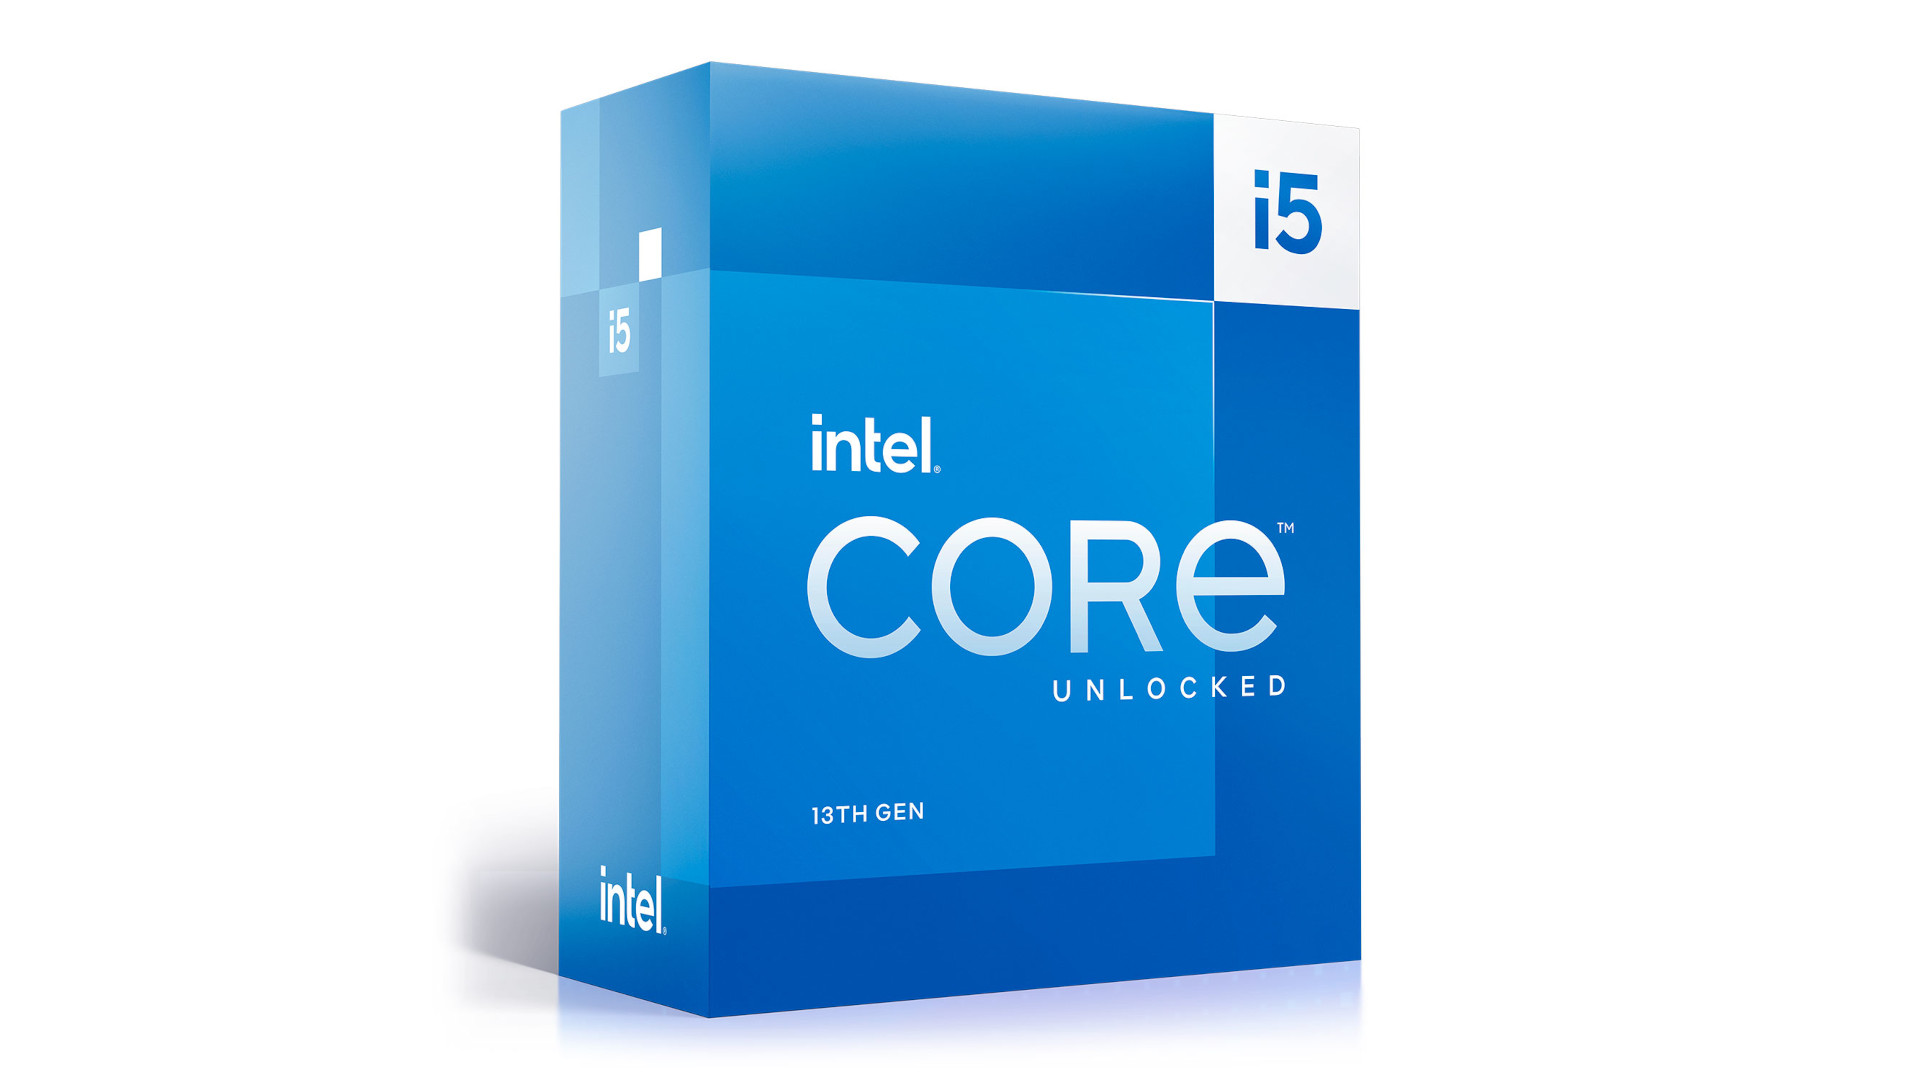 La mejor CPU para juegos es el Intel Core i5 13600K